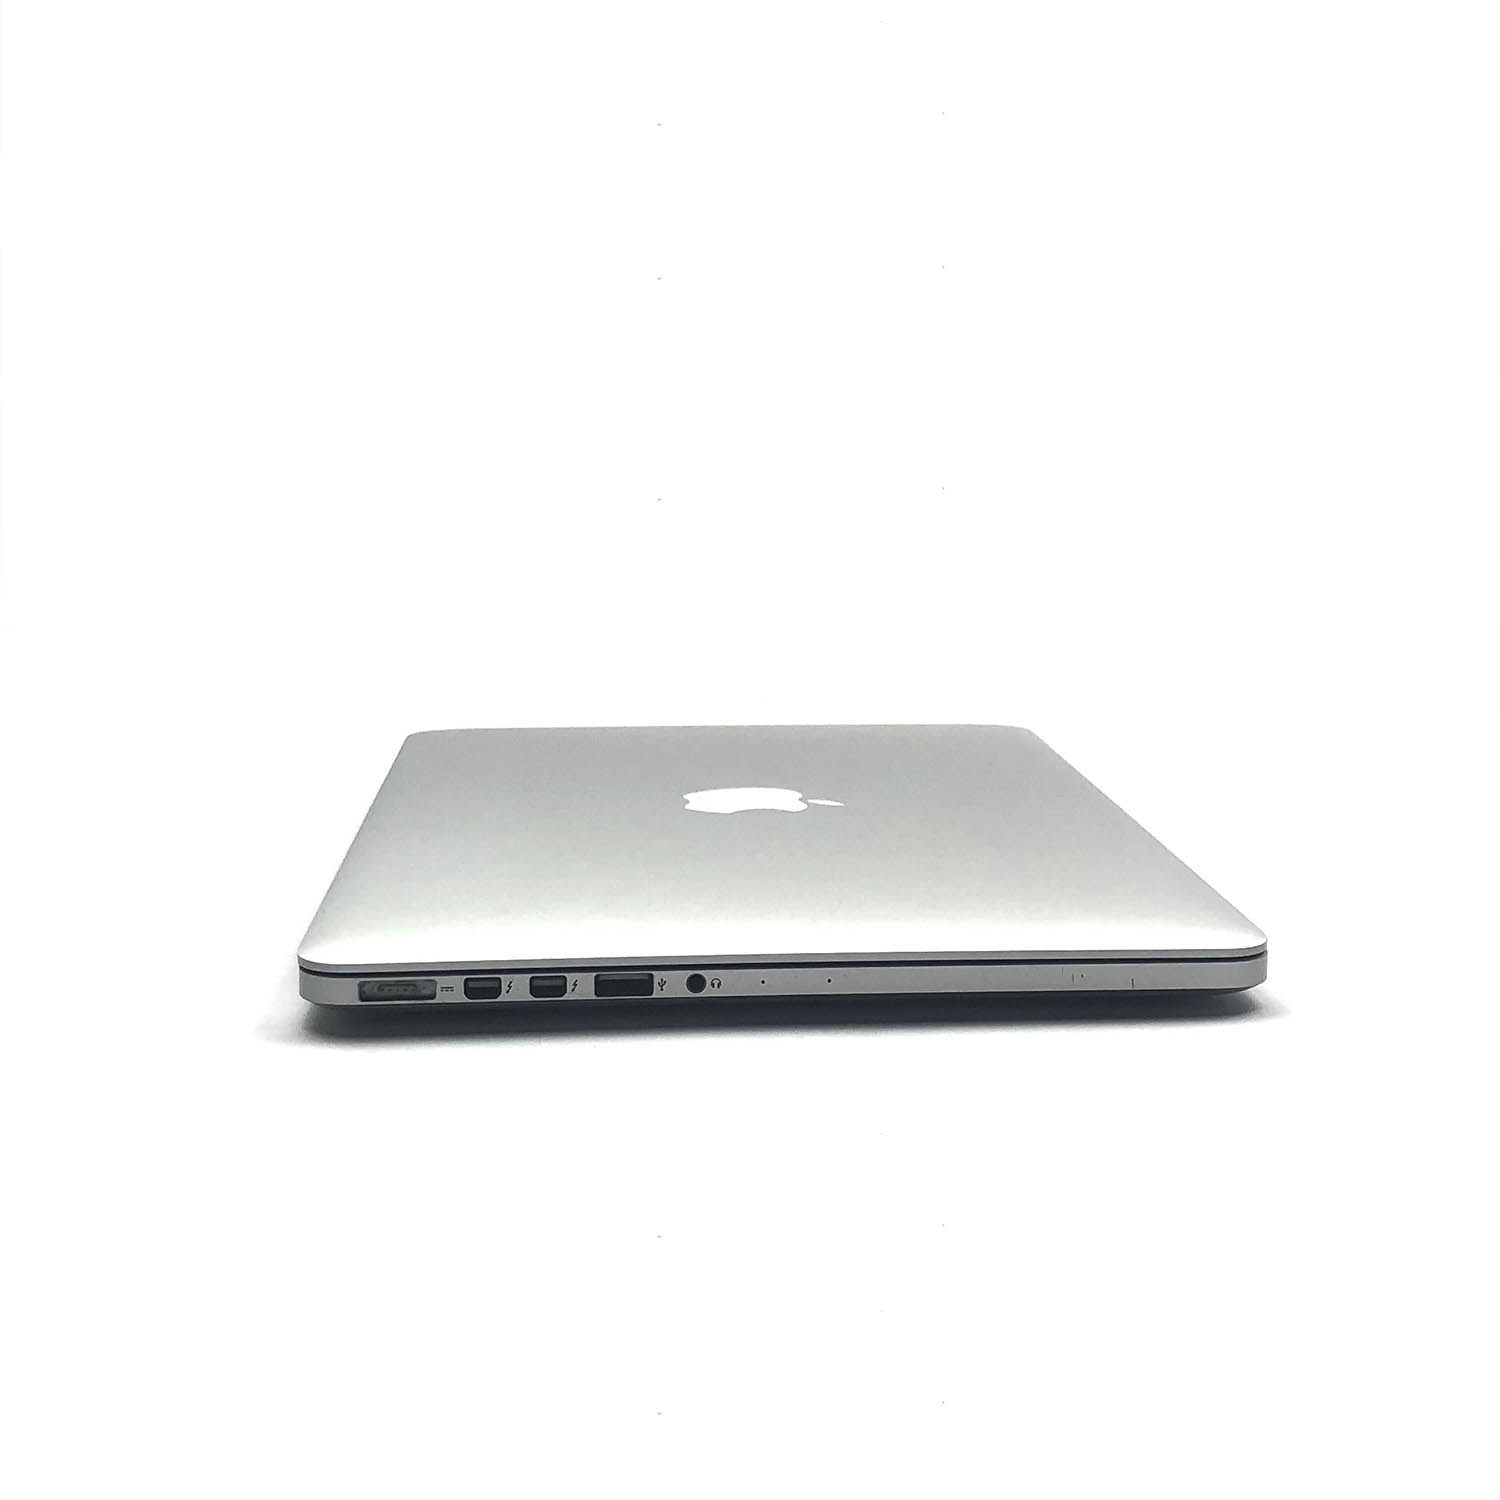 Macbook Pro Retina 13 i7 3.0Ghz 8GB 500GB SSD ME662LL/A Seminovo